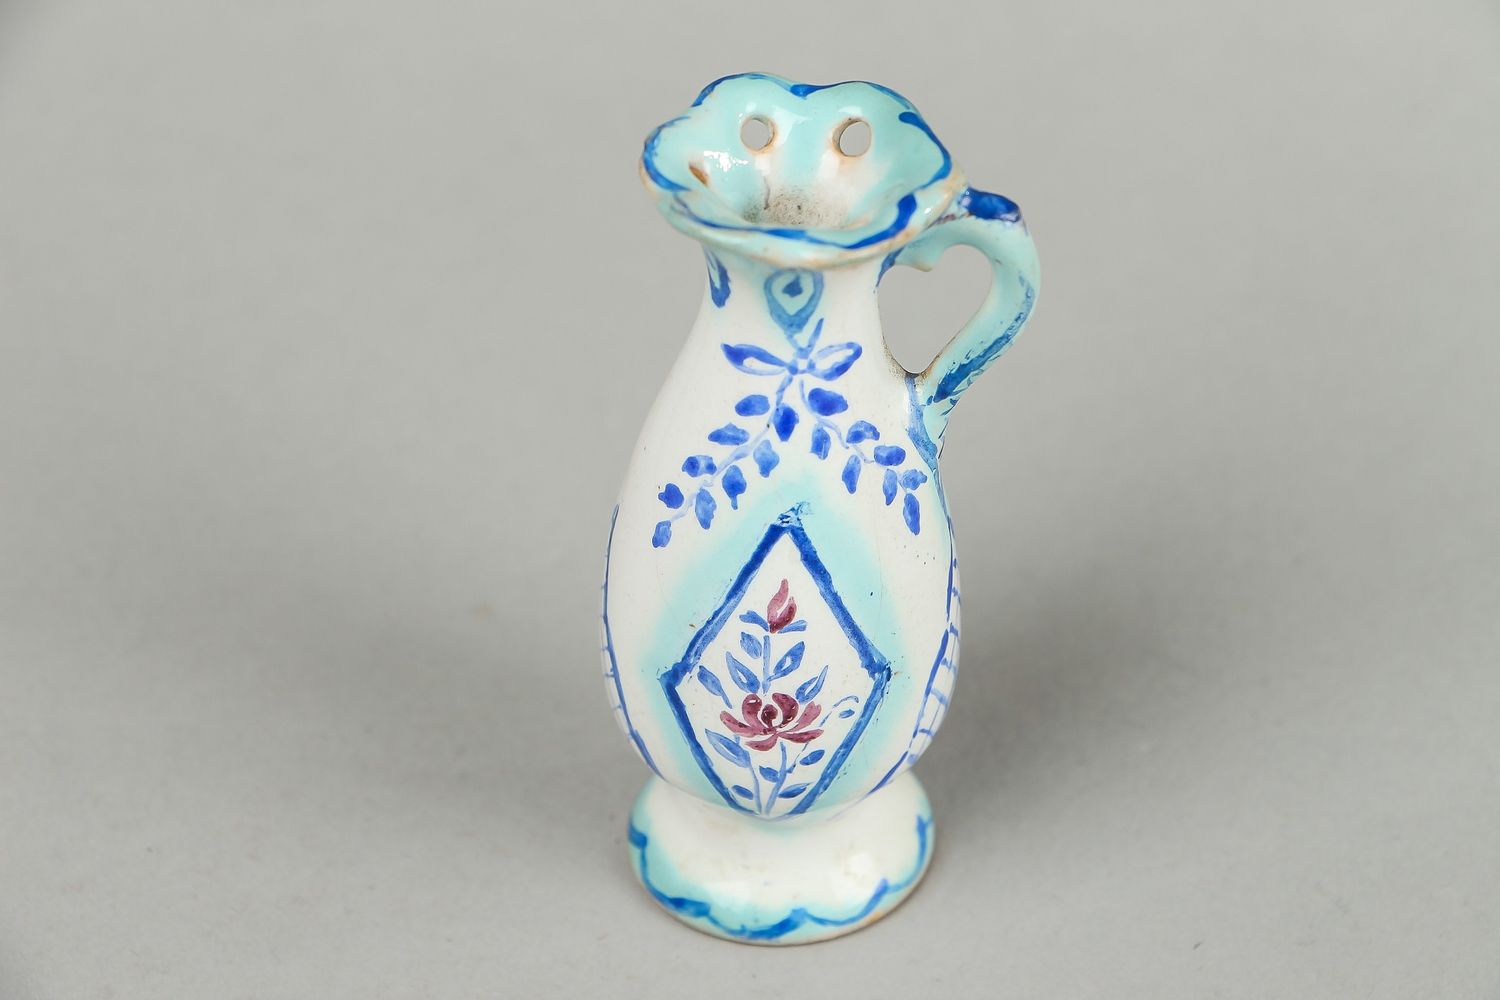 Super tiny 3 inches ceramic handmade vase in floral design 0,09 lb photo 2